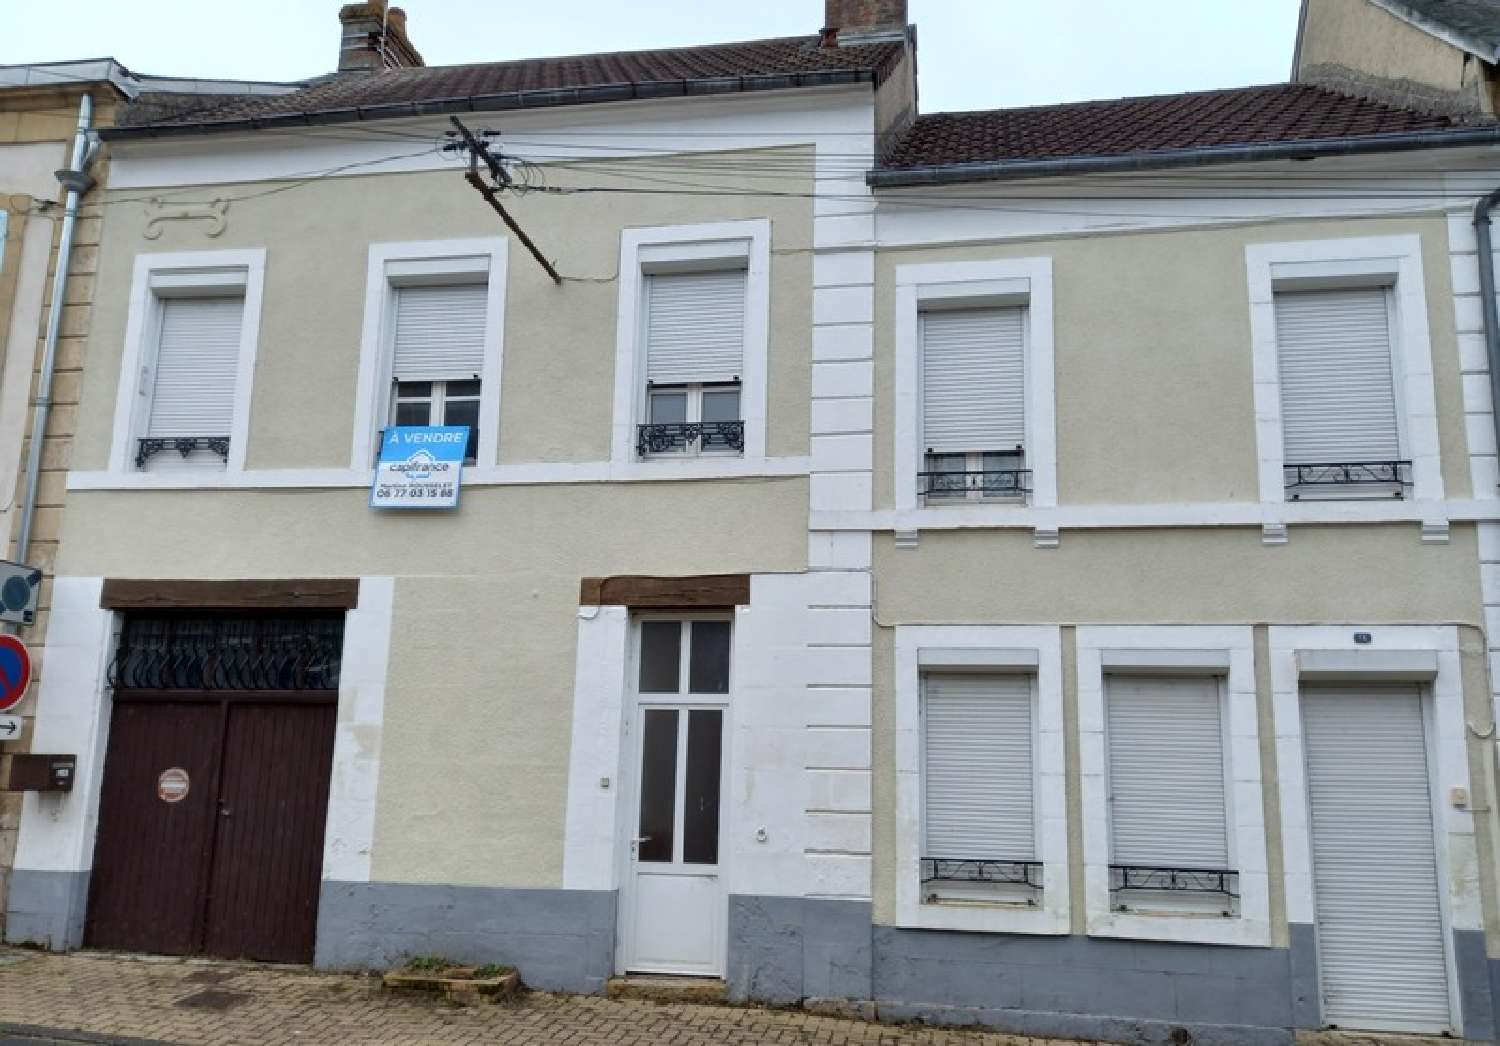  for sale house Prémery Nièvre 1